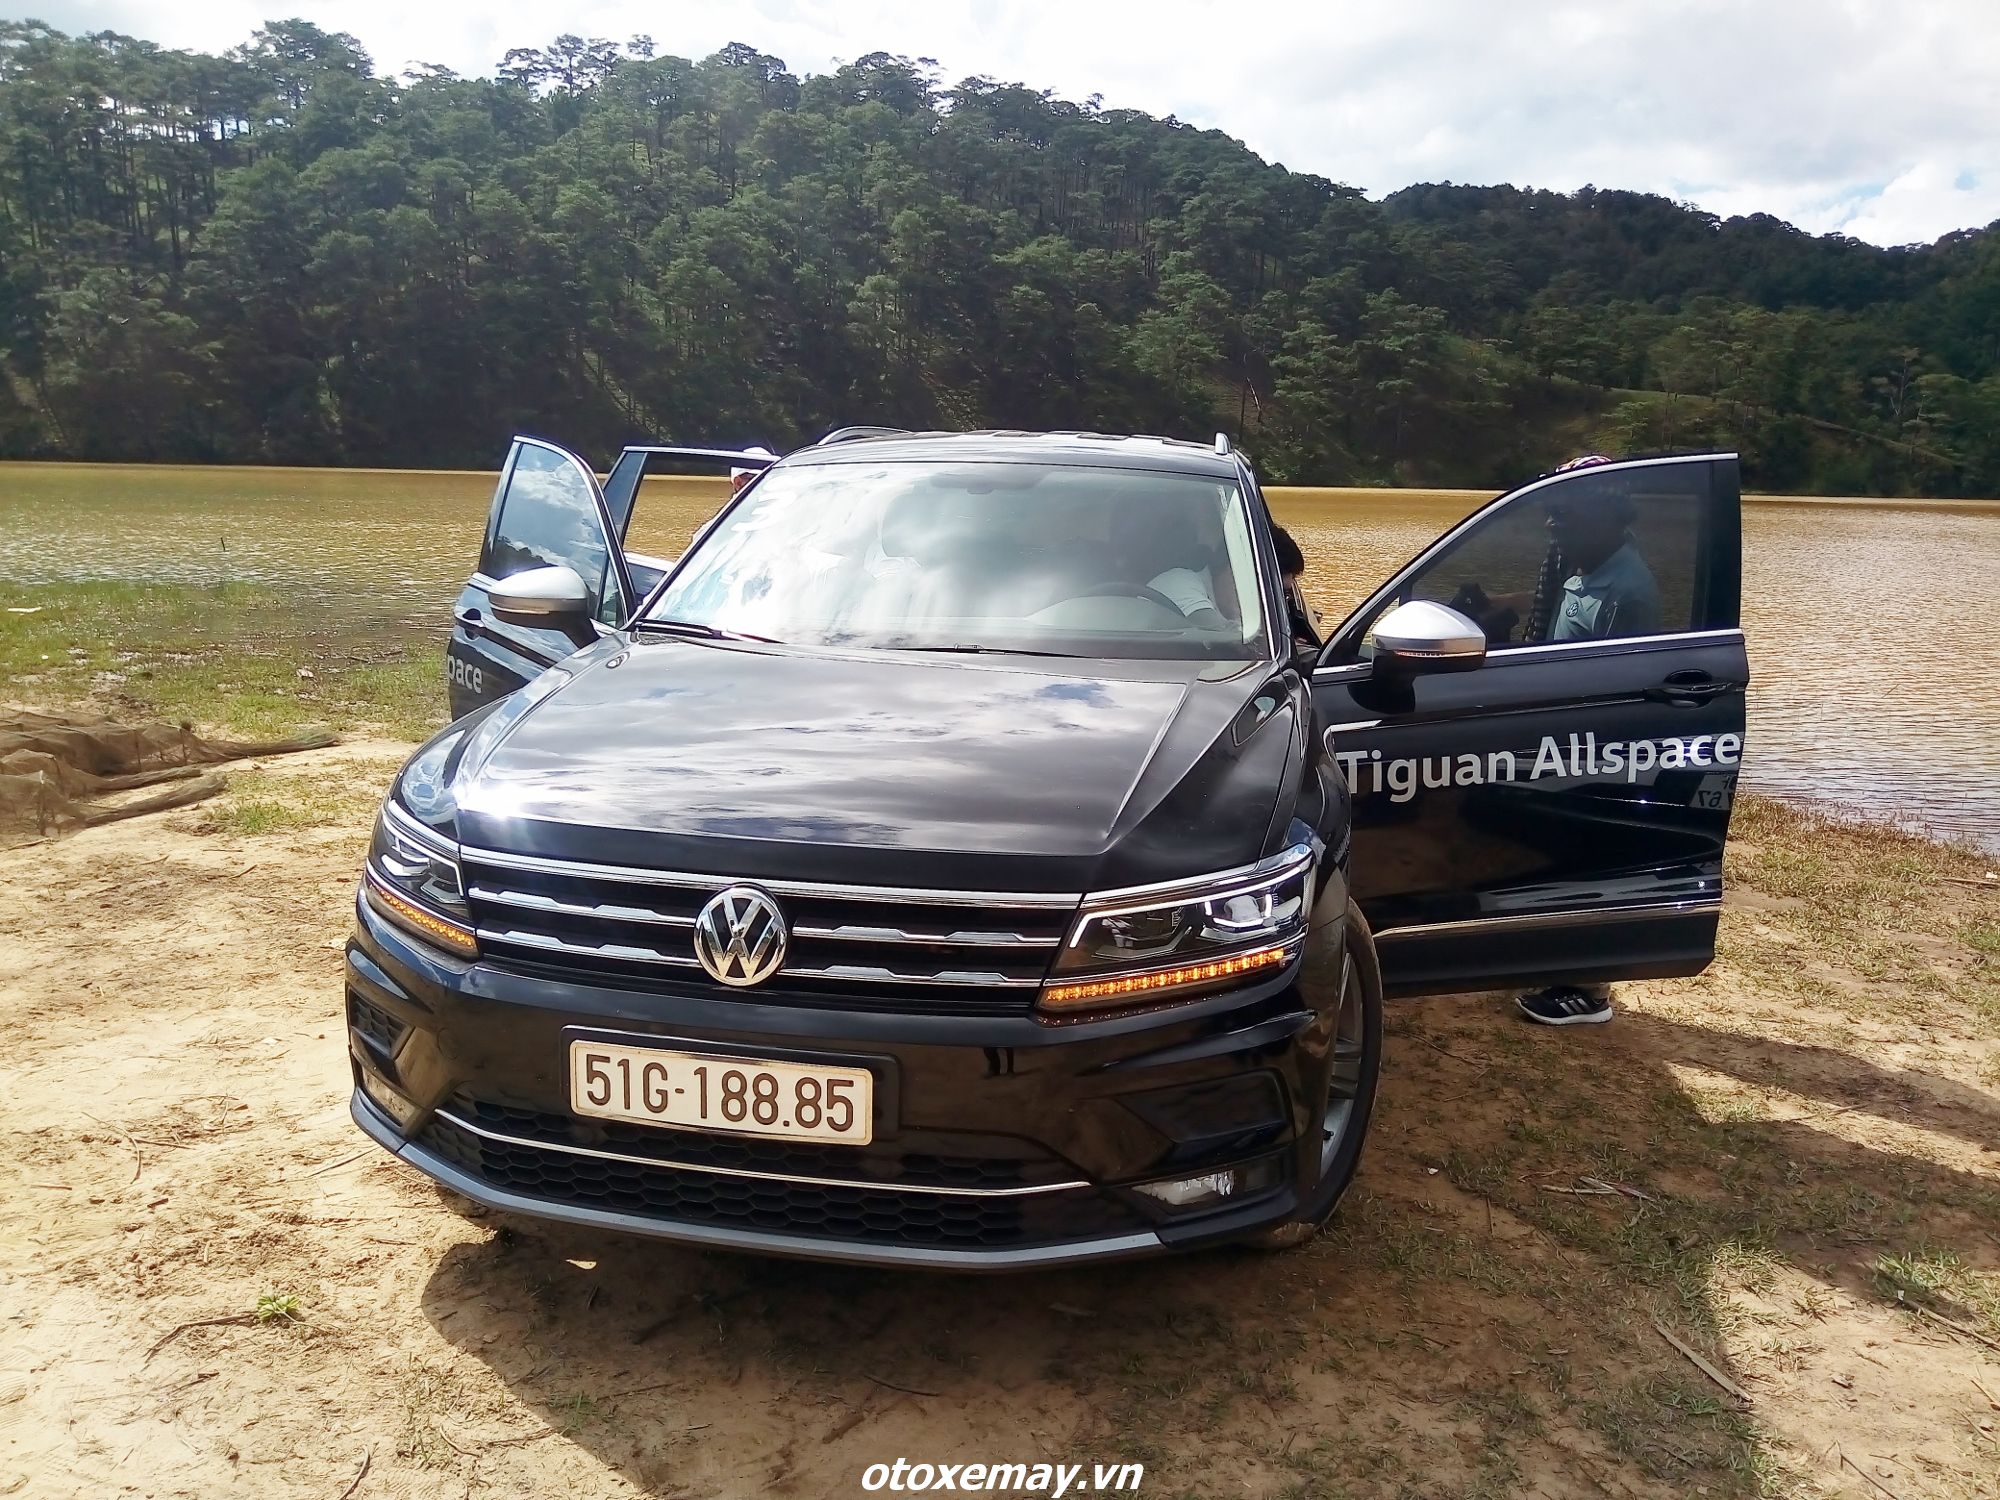 Vì sao SUV Volkswagen Tiguan Allspace là bạn đồng hành đáng giá?